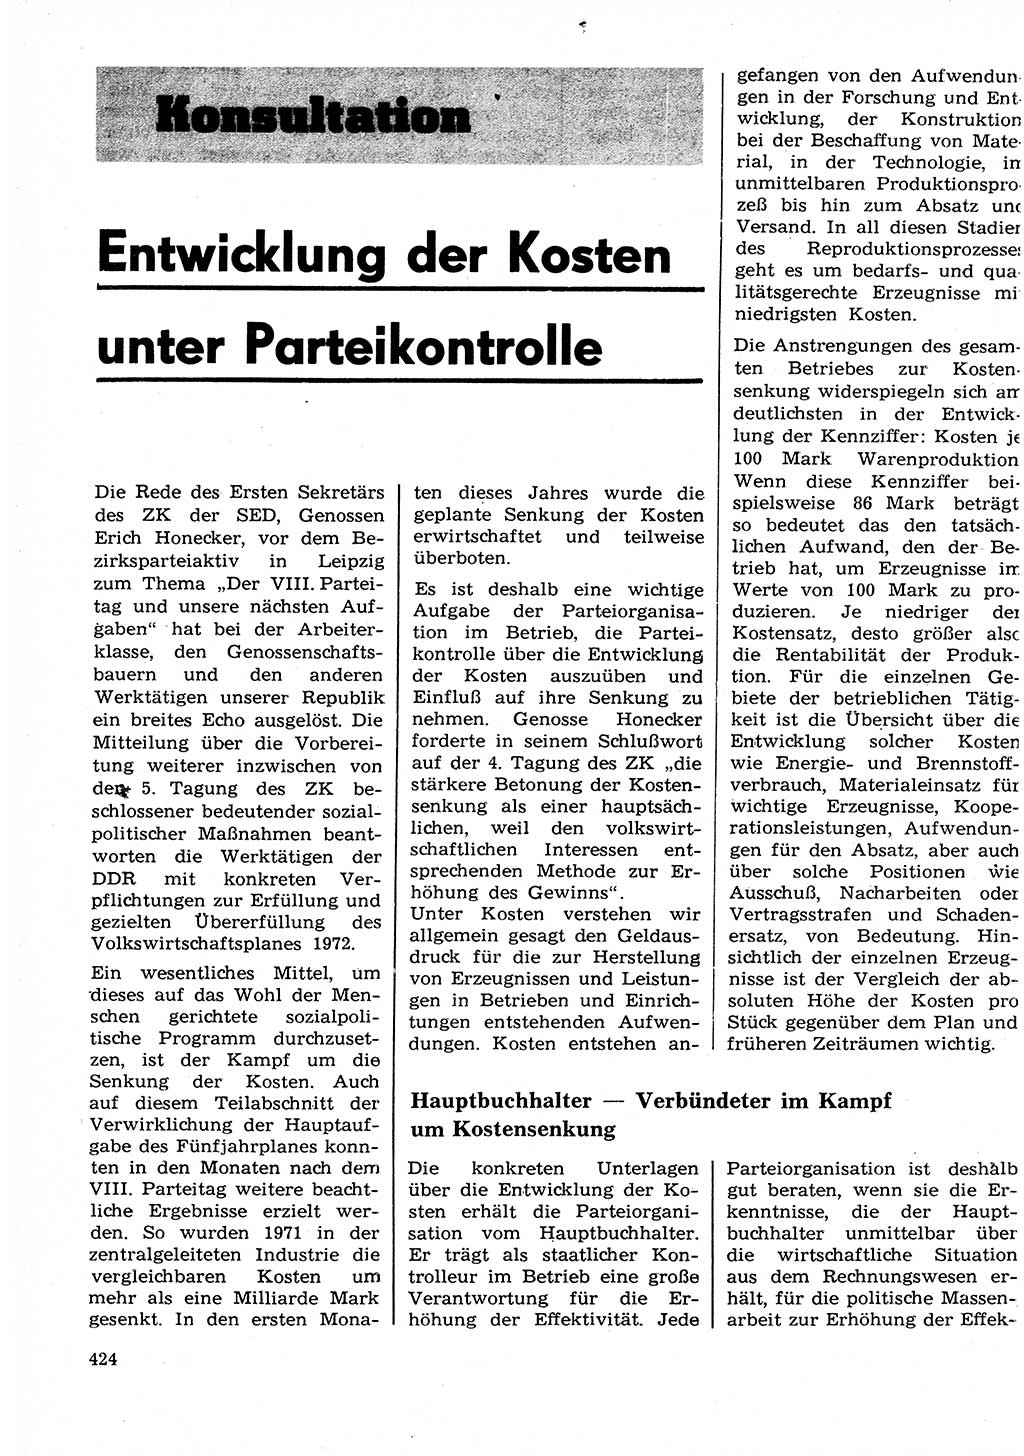 Neuer Weg (NW), Organ des Zentralkomitees (ZK) der SED (Sozialistische Einheitspartei Deutschlands) für Fragen des Parteilebens, 27. Jahrgang [Deutsche Demokratische Republik (DDR)] 1972, Seite 424 (NW ZK SED DDR 1972, S. 424)